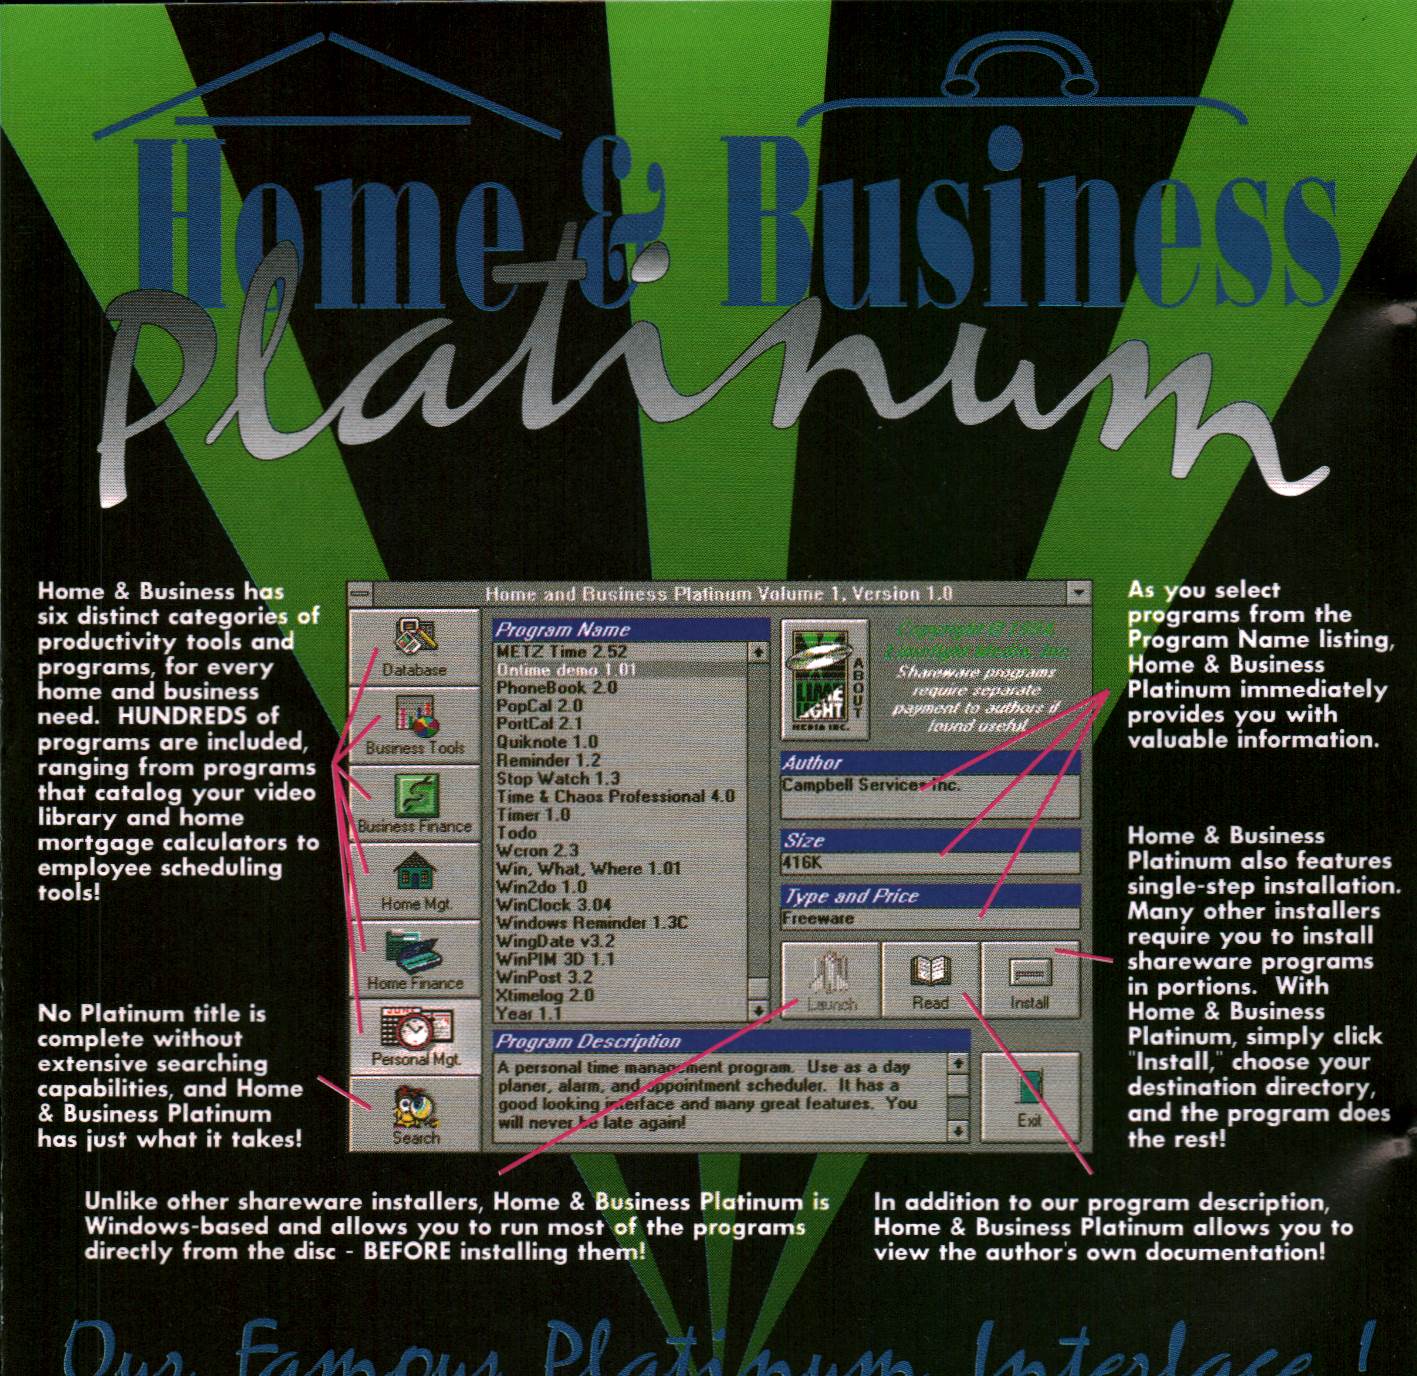 Home & Business Platinum